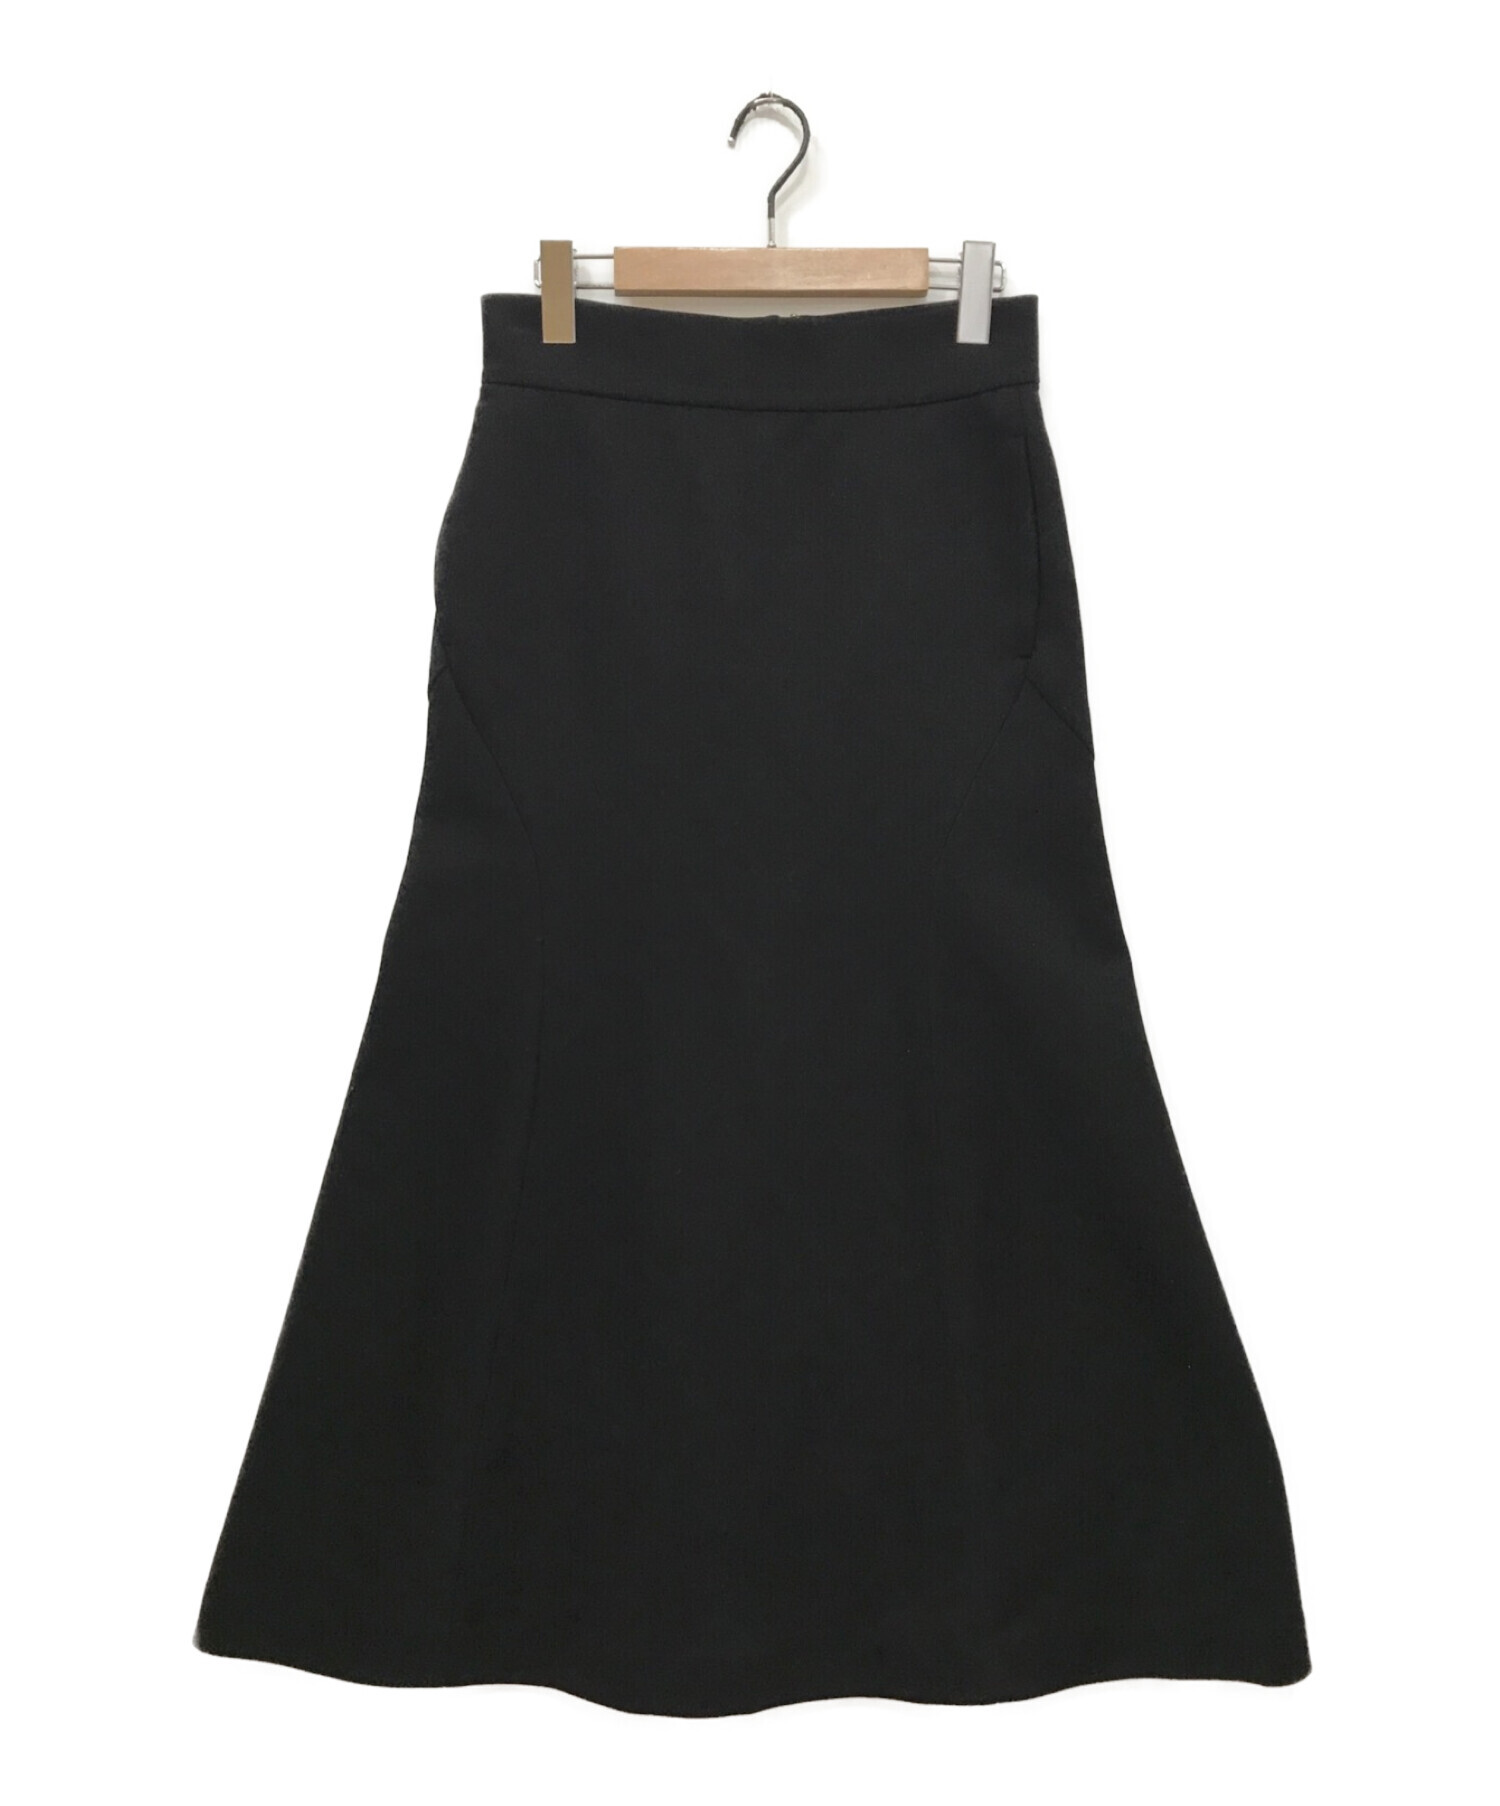 mame kurogouchi (マメクロゴウチ) Double Face Jersey Flared Skirt ブラック サイズ:2